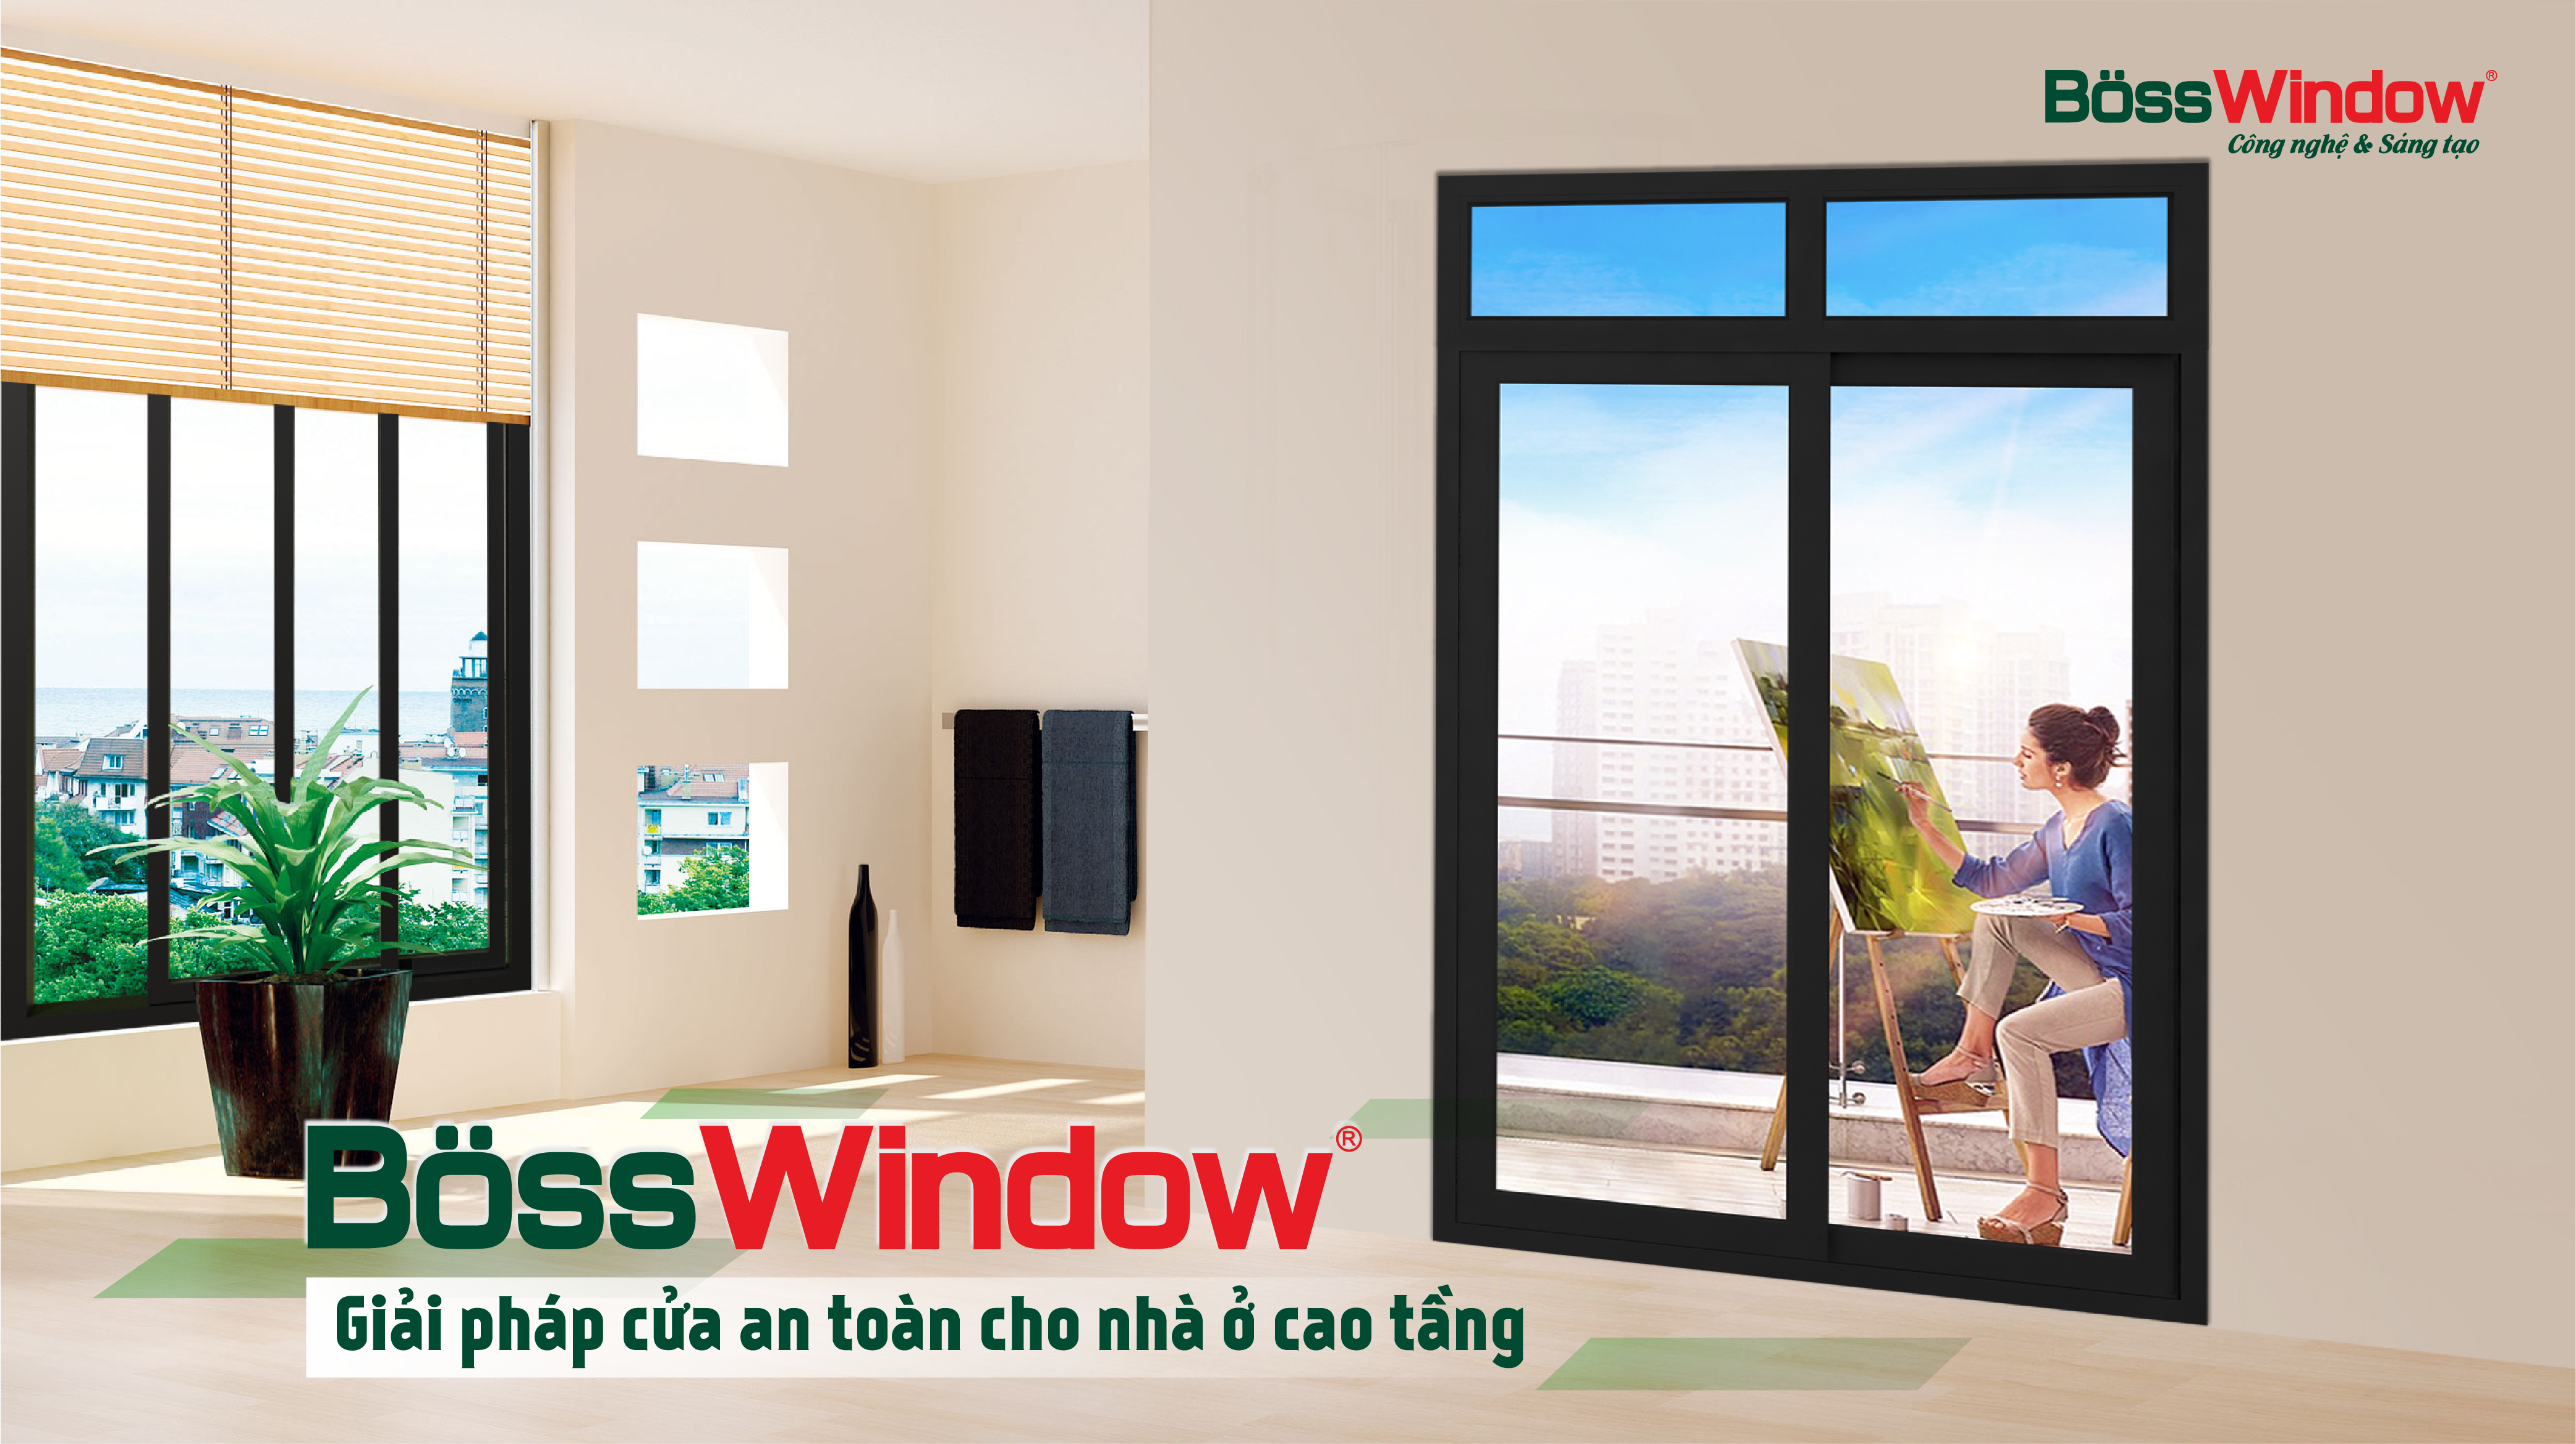 BössWindow - Giải pháp cửa an toàn cho nhà ở cao tầng